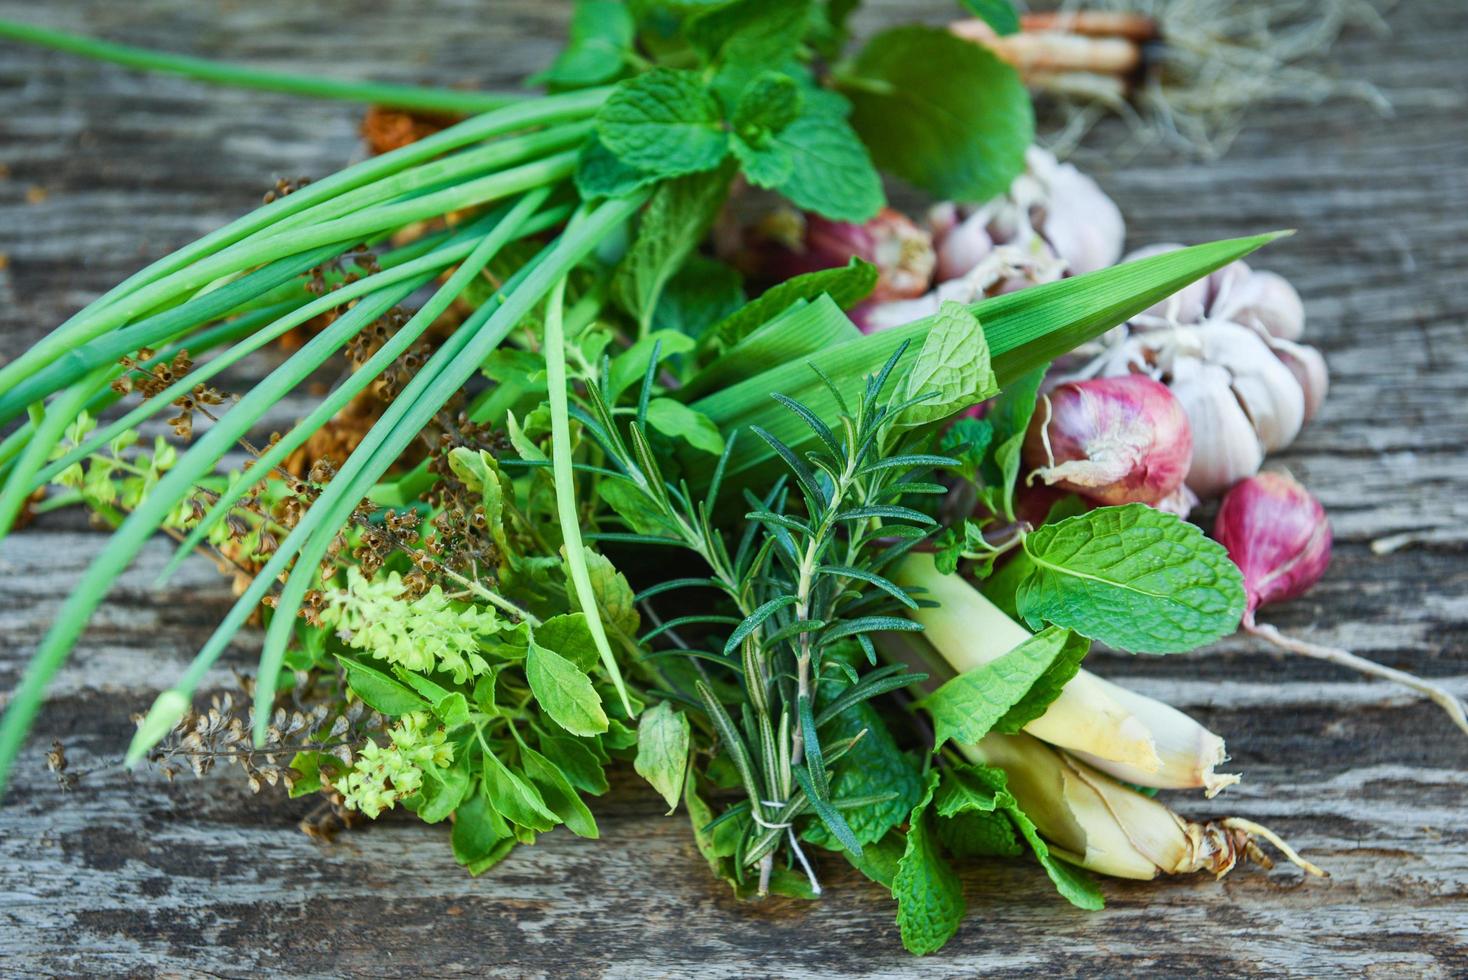 ervas naturais frescas e especiarias em fundo de madeira rústica na cozinha para ingredientes alimentares - conceito de jardim de ervas de cozinha foto